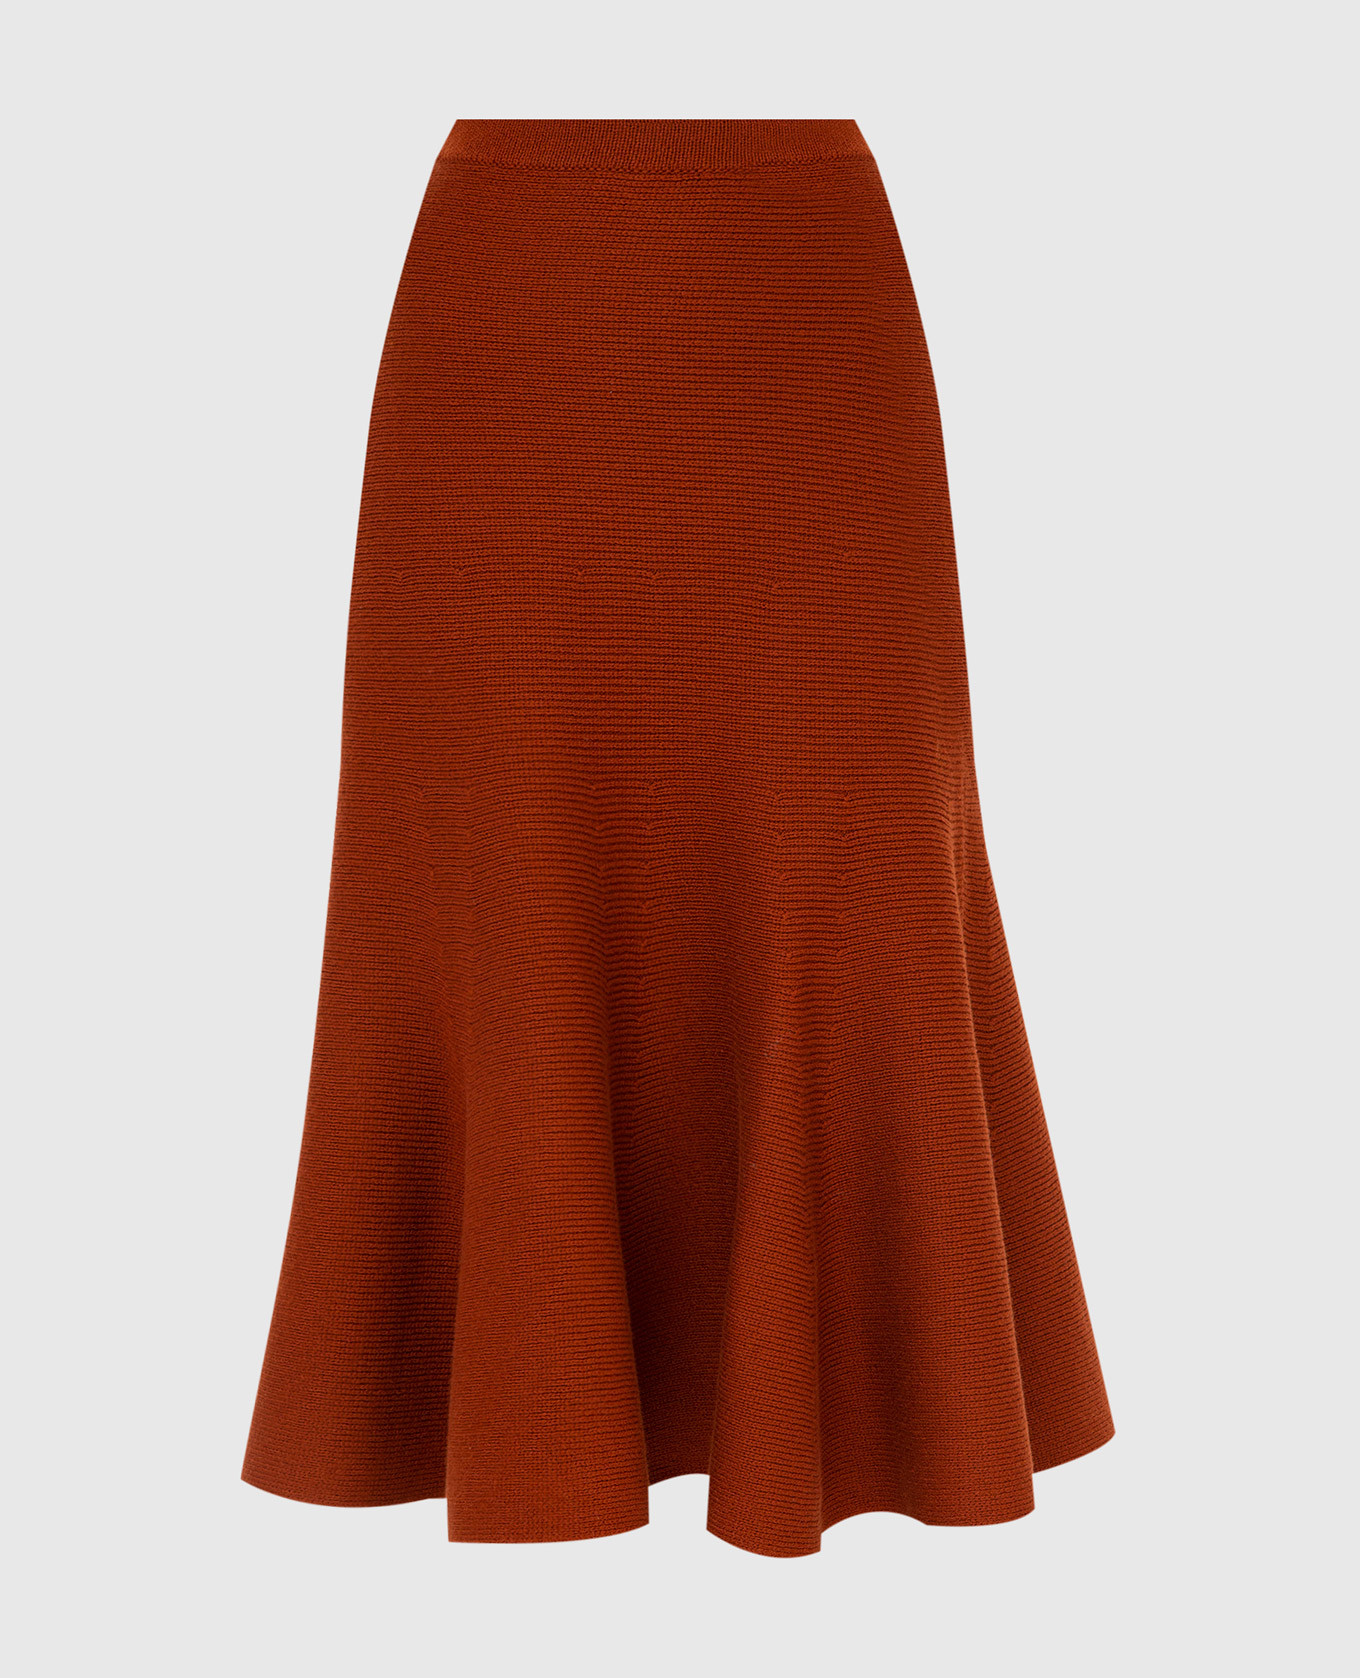 Olive Terracotta Merino Wool Skirt